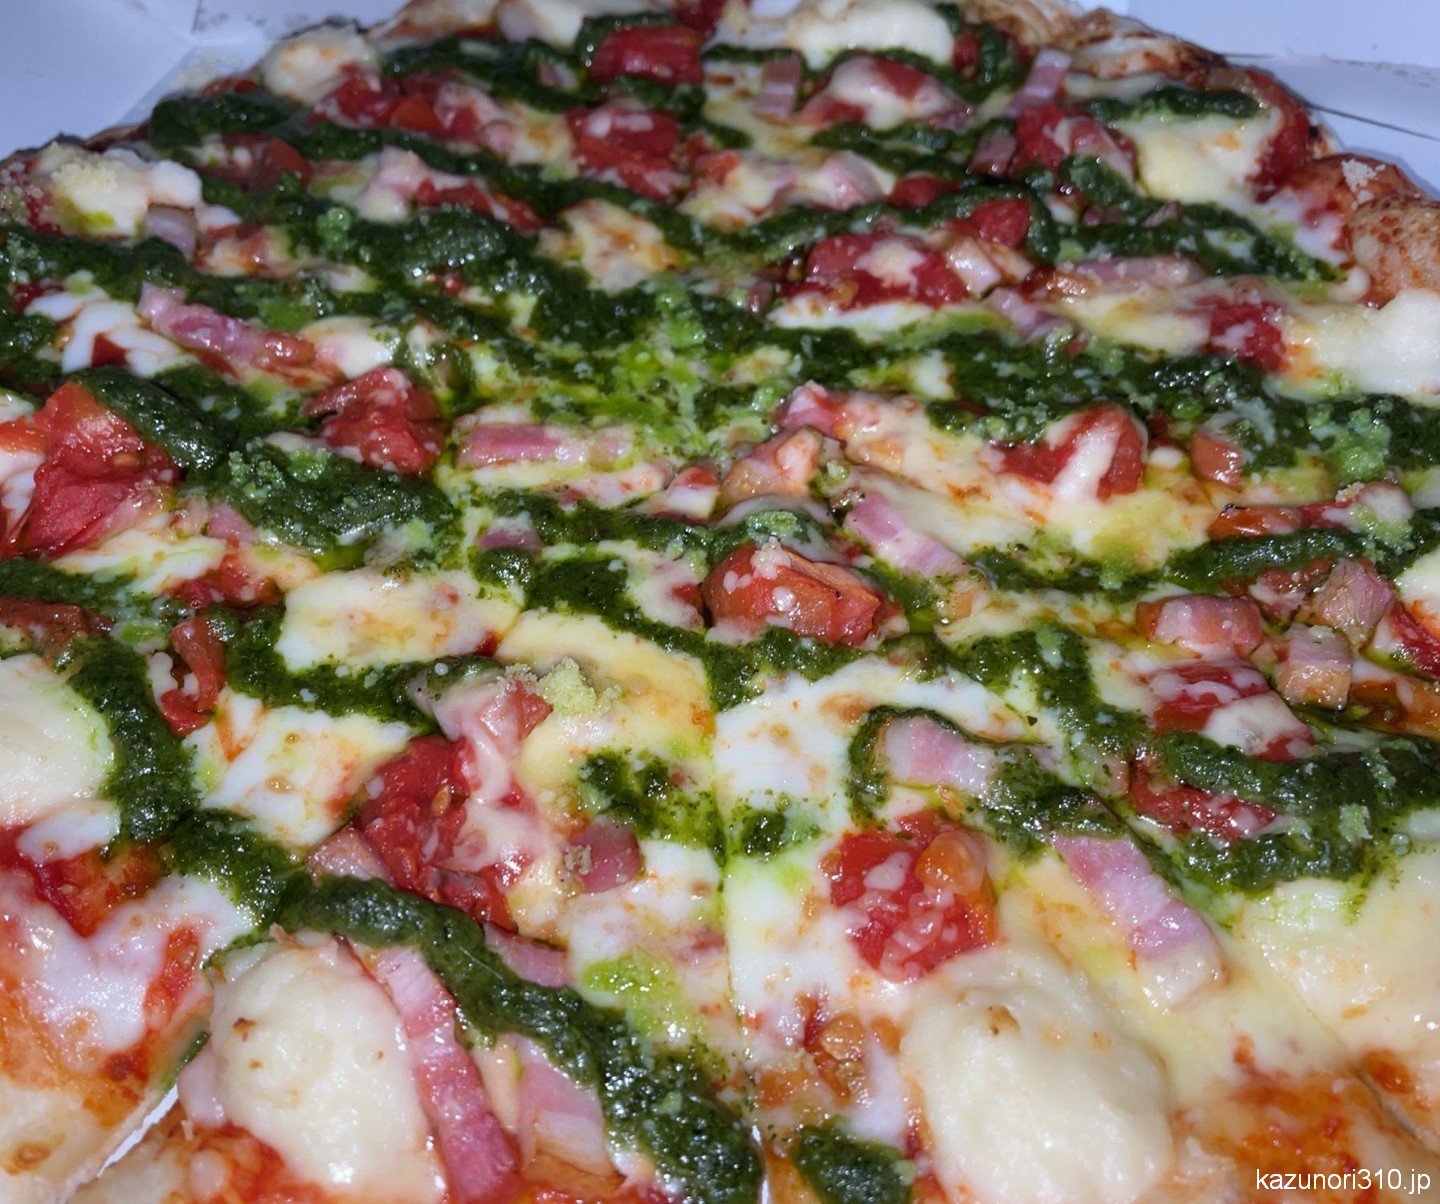 #ジェノバ風ガーリックトマト #ピザハット 例の5月新商品は見た目・具材でパス。こちらを食す。うまうま